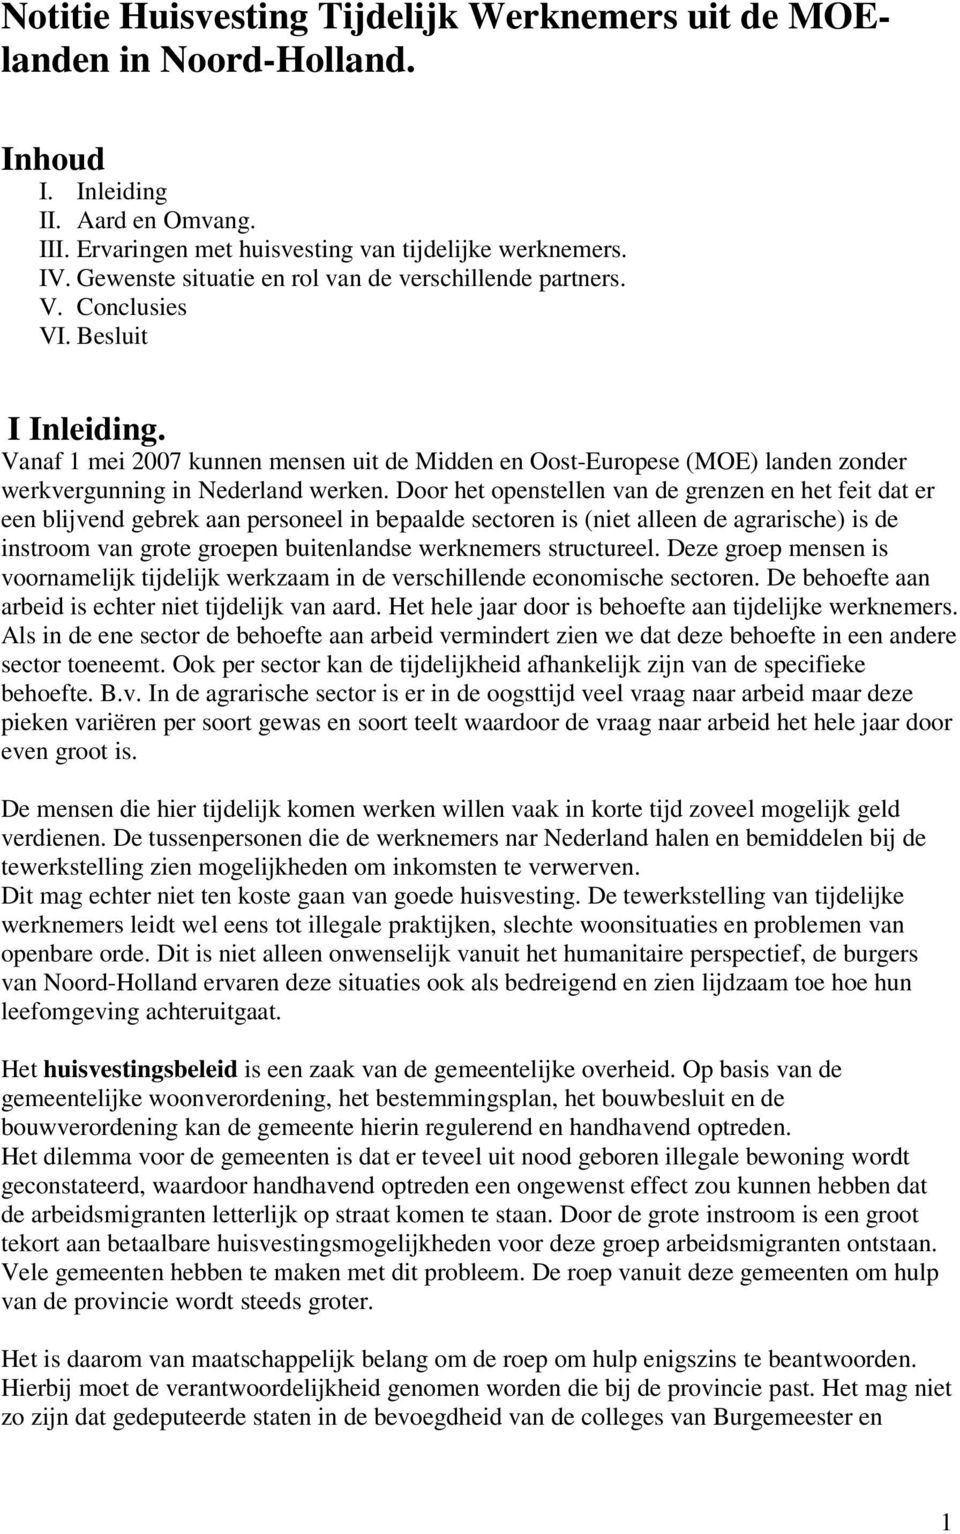 Vanaf 1 mei 2007 kunnen mensen uit de Midden en Oost-Europese (MOE) landen zonder werkvergunning in Nederland werken.